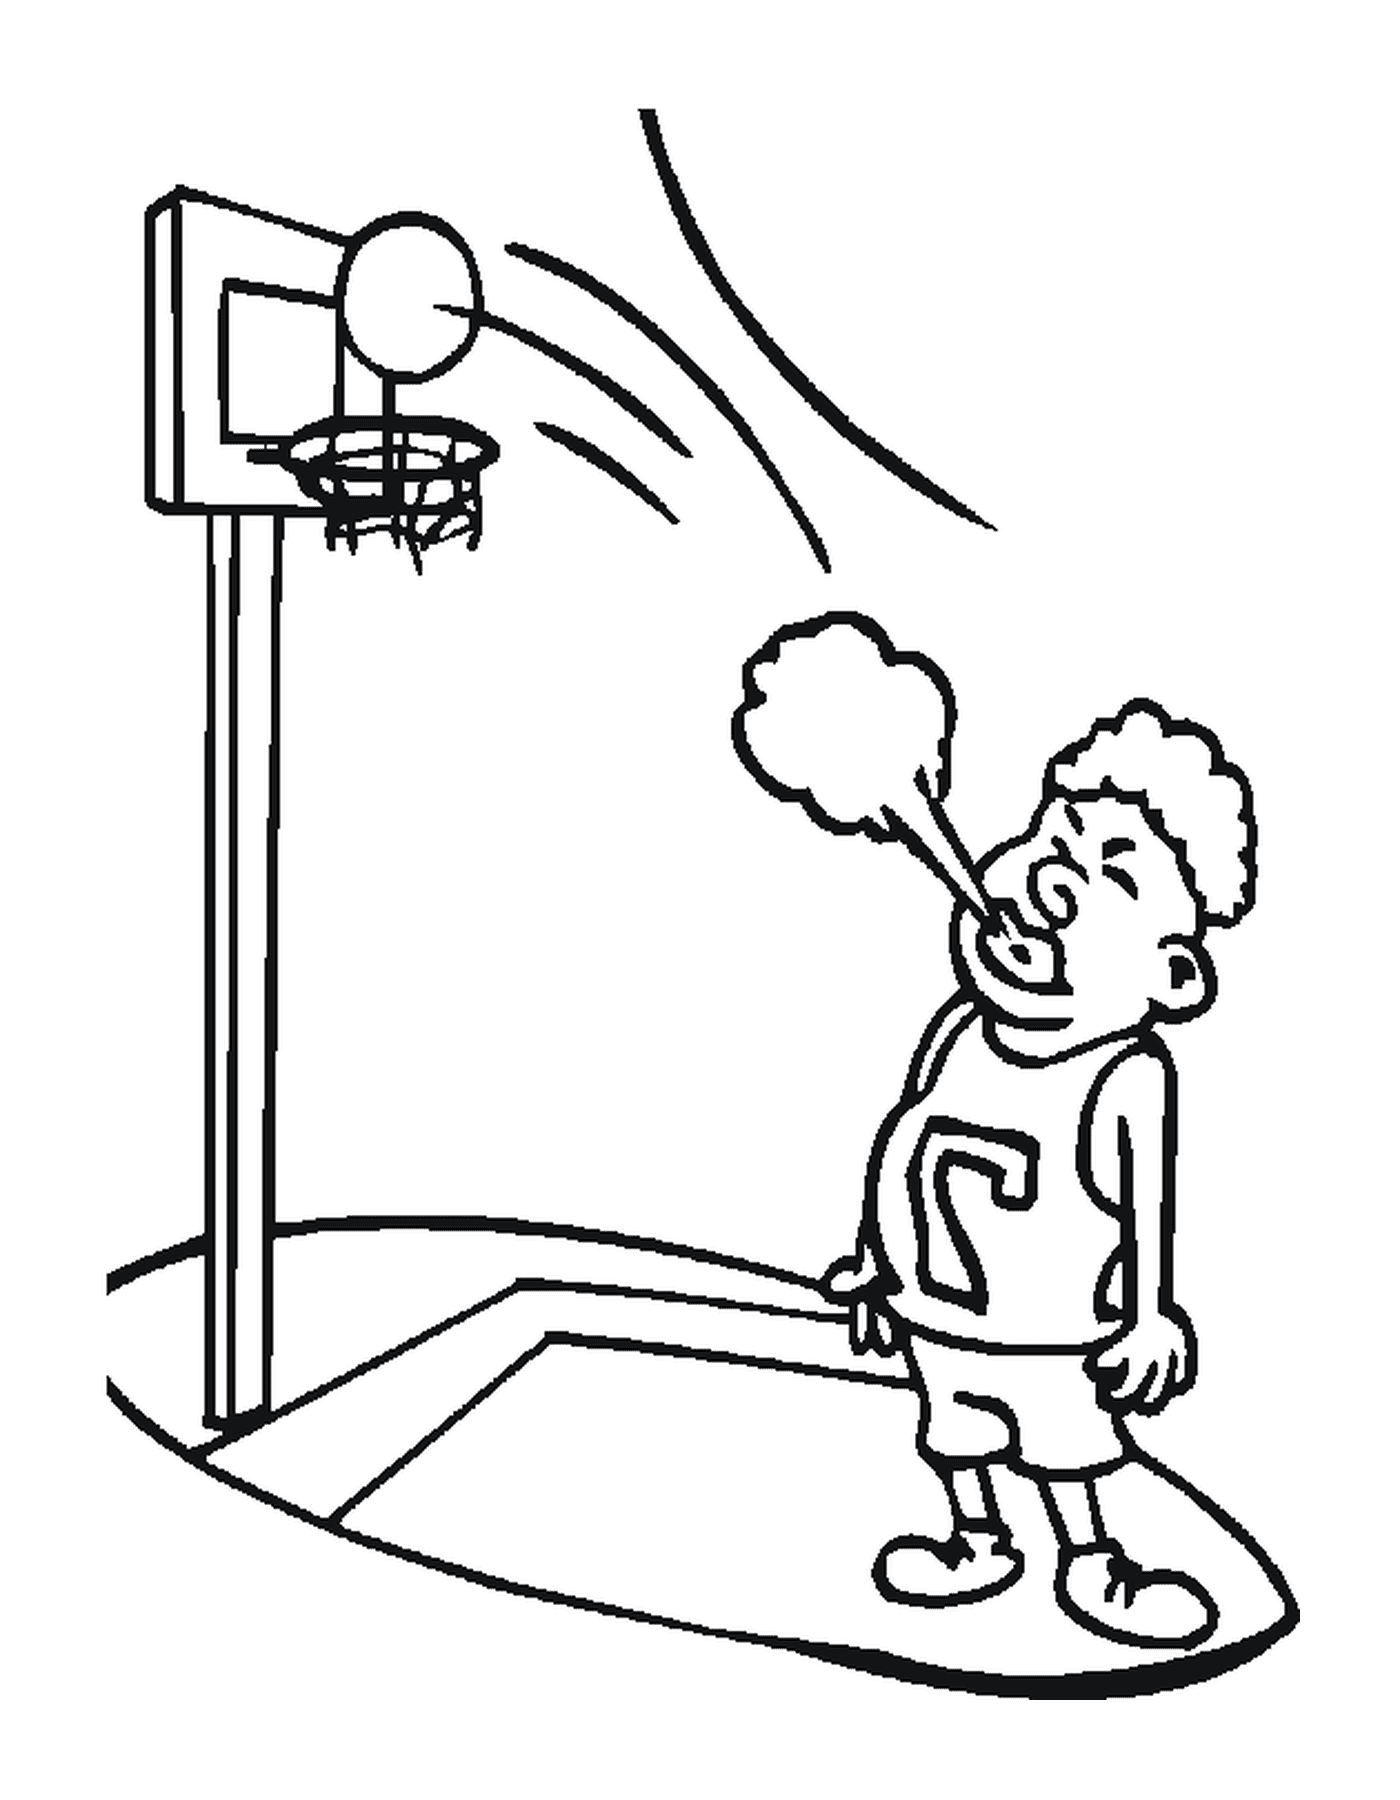   Un joueur de basketball souffle 